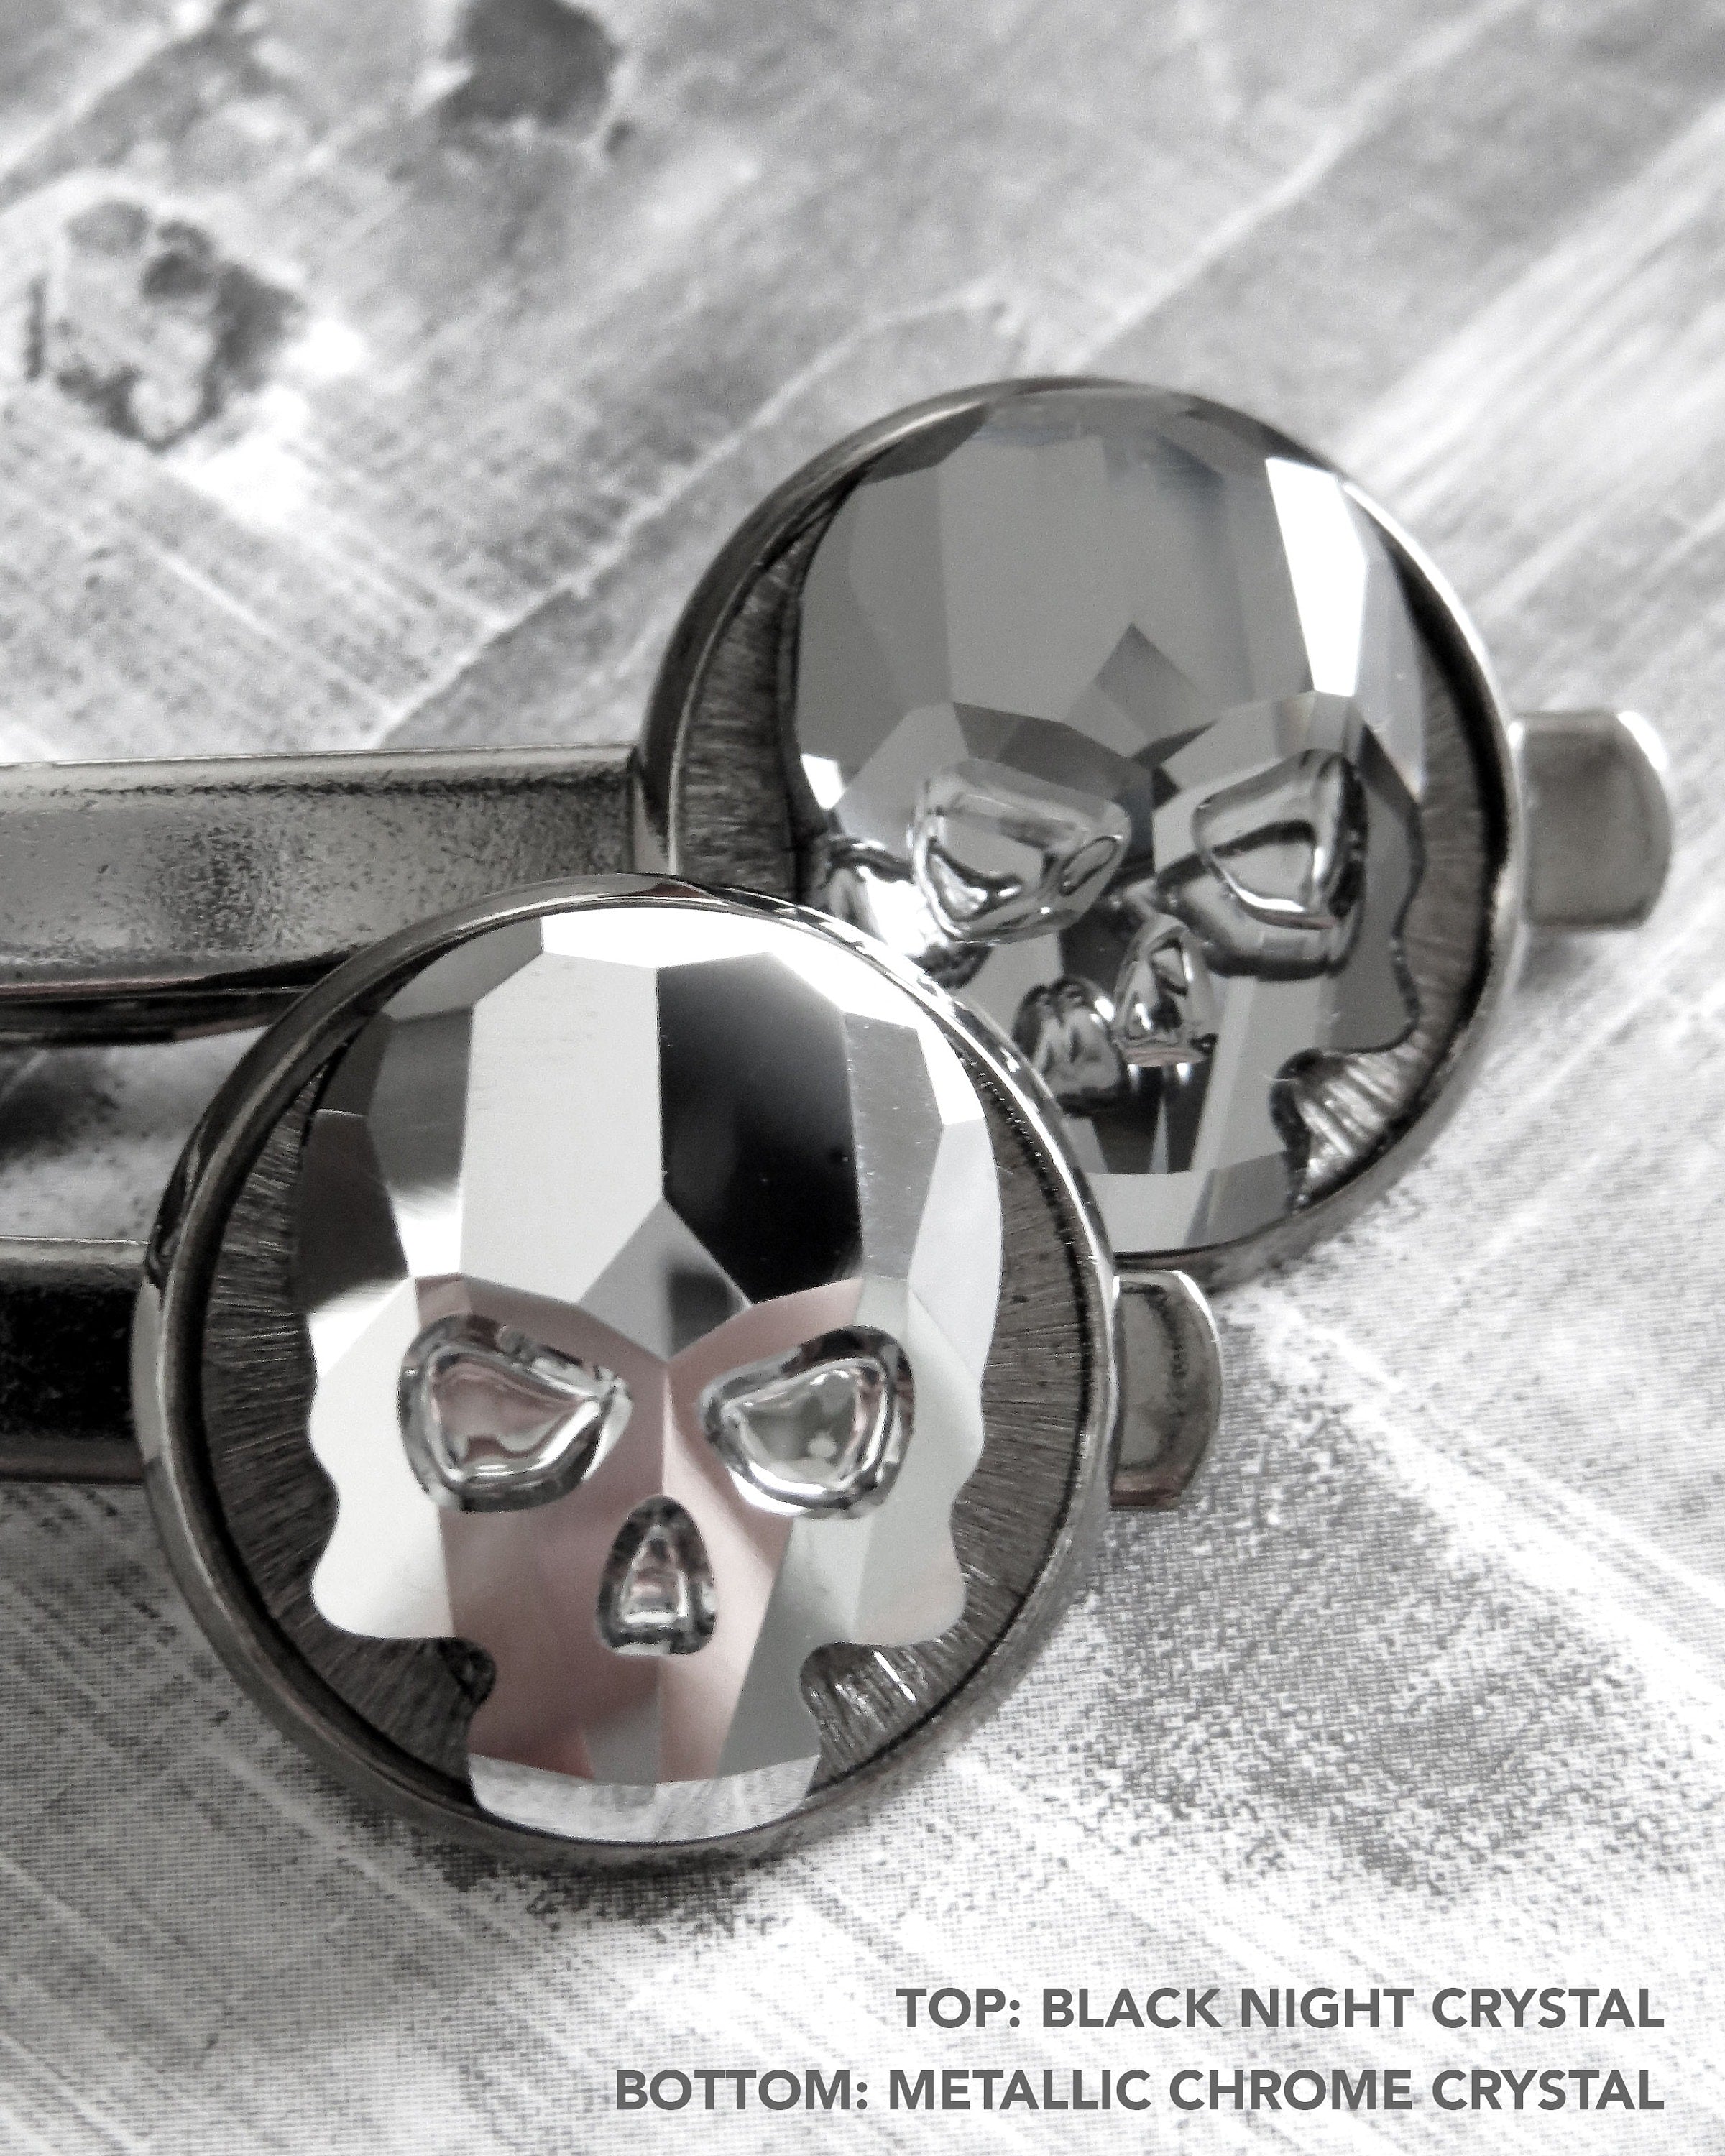 Crystal Skull Tie Clip - Skull Tie Tack 2 Colors: Black Night or Metallic Silver Crystal - Goth Groom Groomsmen Skull Formal Mens Menswear